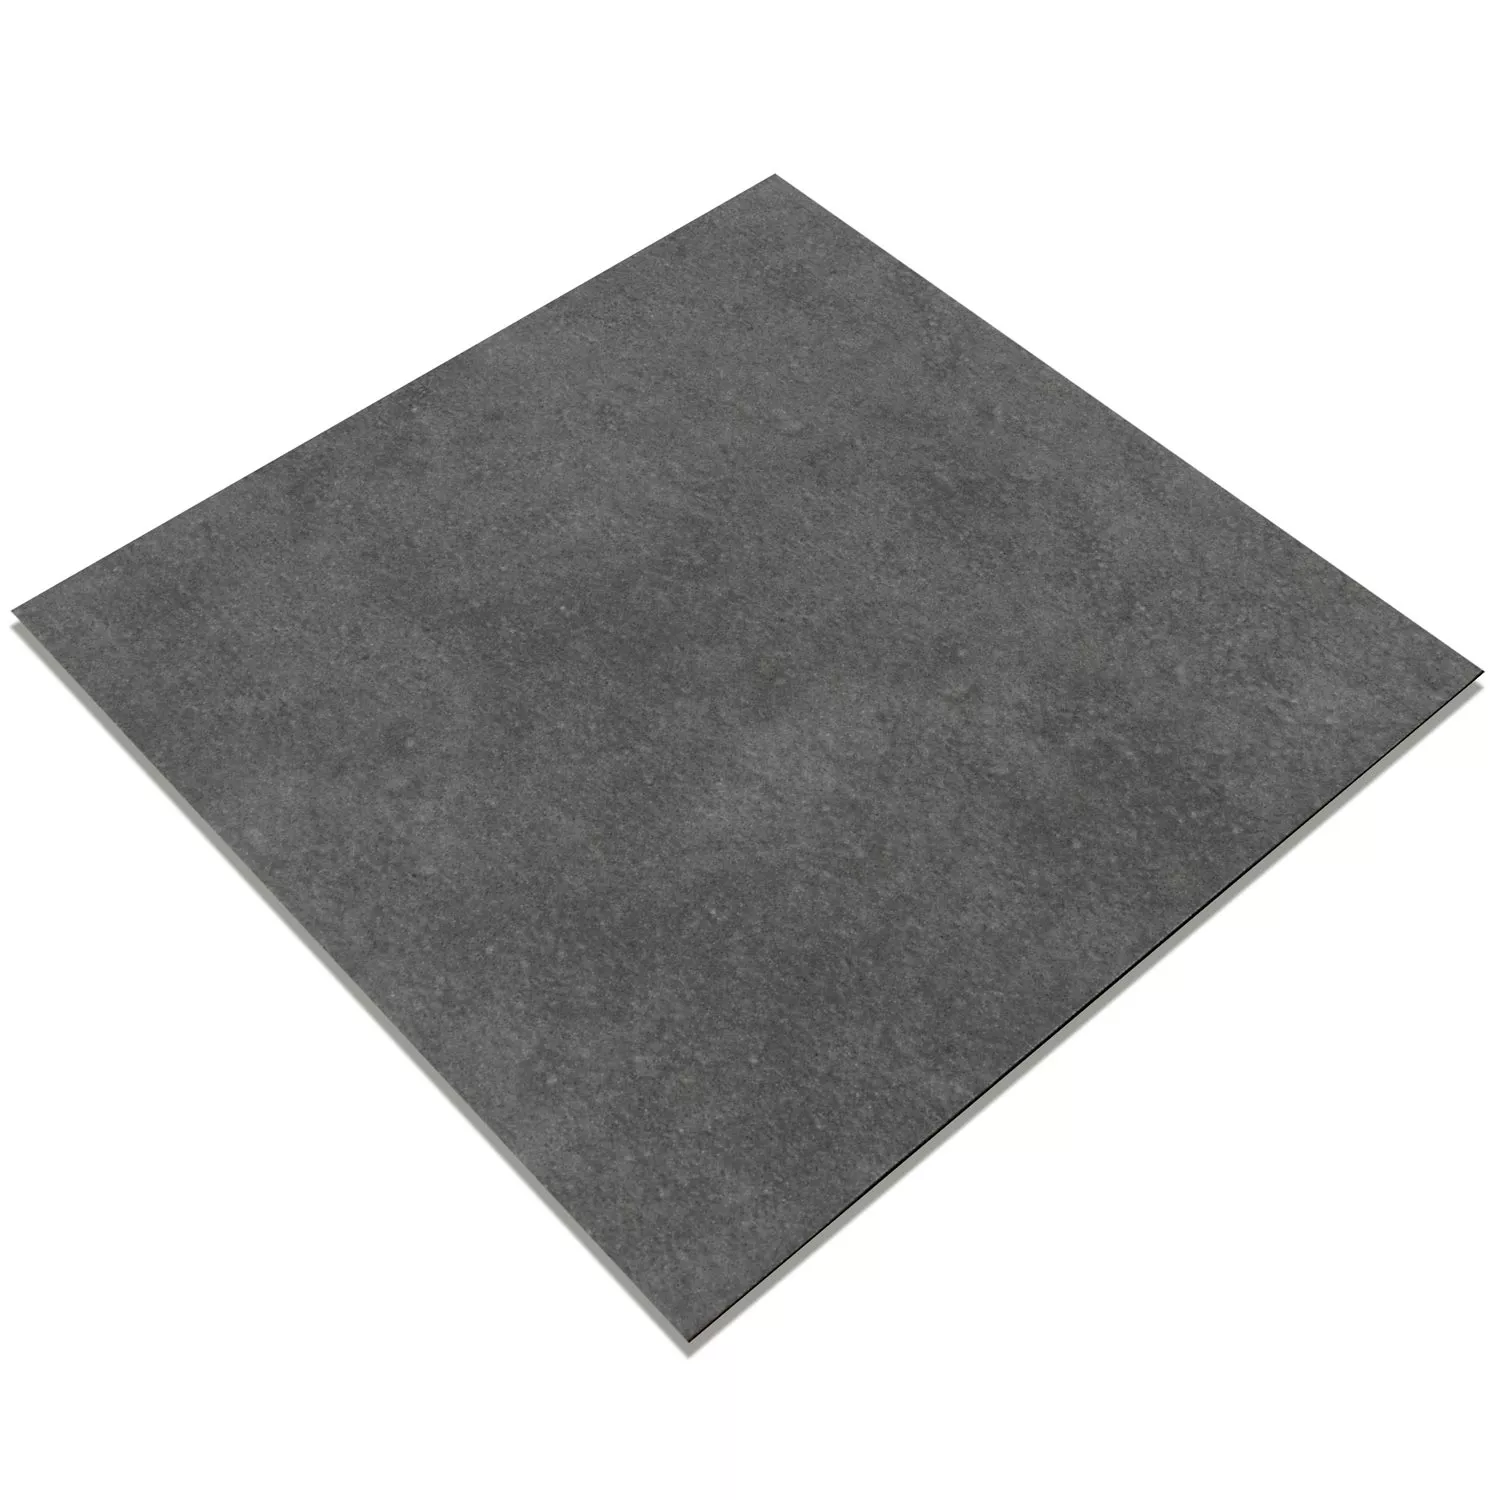 Πρότυπο Όψη Πλακιδίων Tσιμέντου Gotik Πλακάκι Bάσης Σκούρο Γκρι 22,3x22,3cm